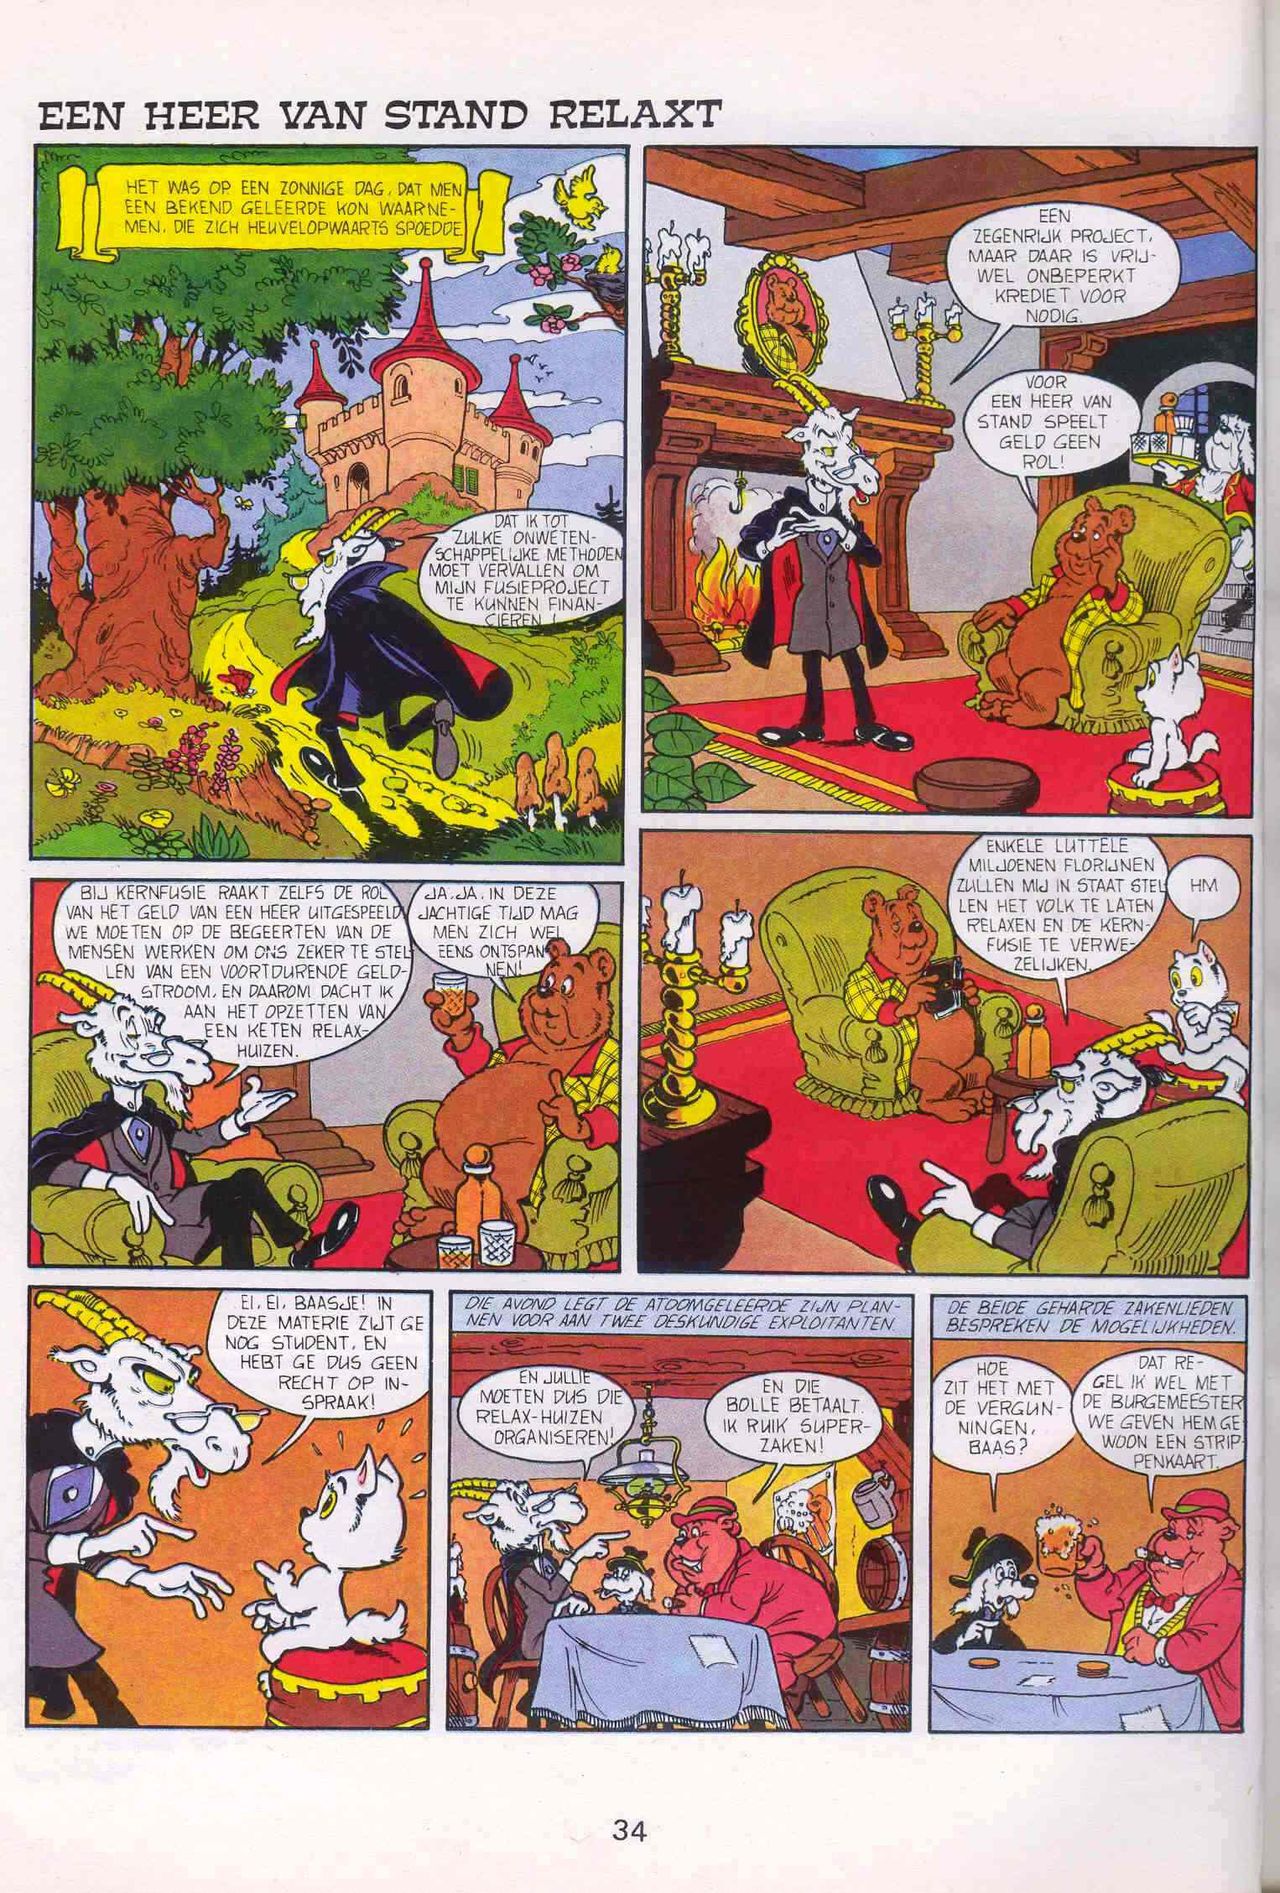 Strip-Tease - 01 - Een Vrolijke Parodie Op Bekende Striphelden (Dutch) Een driedelige serie van Roger Brunel 35